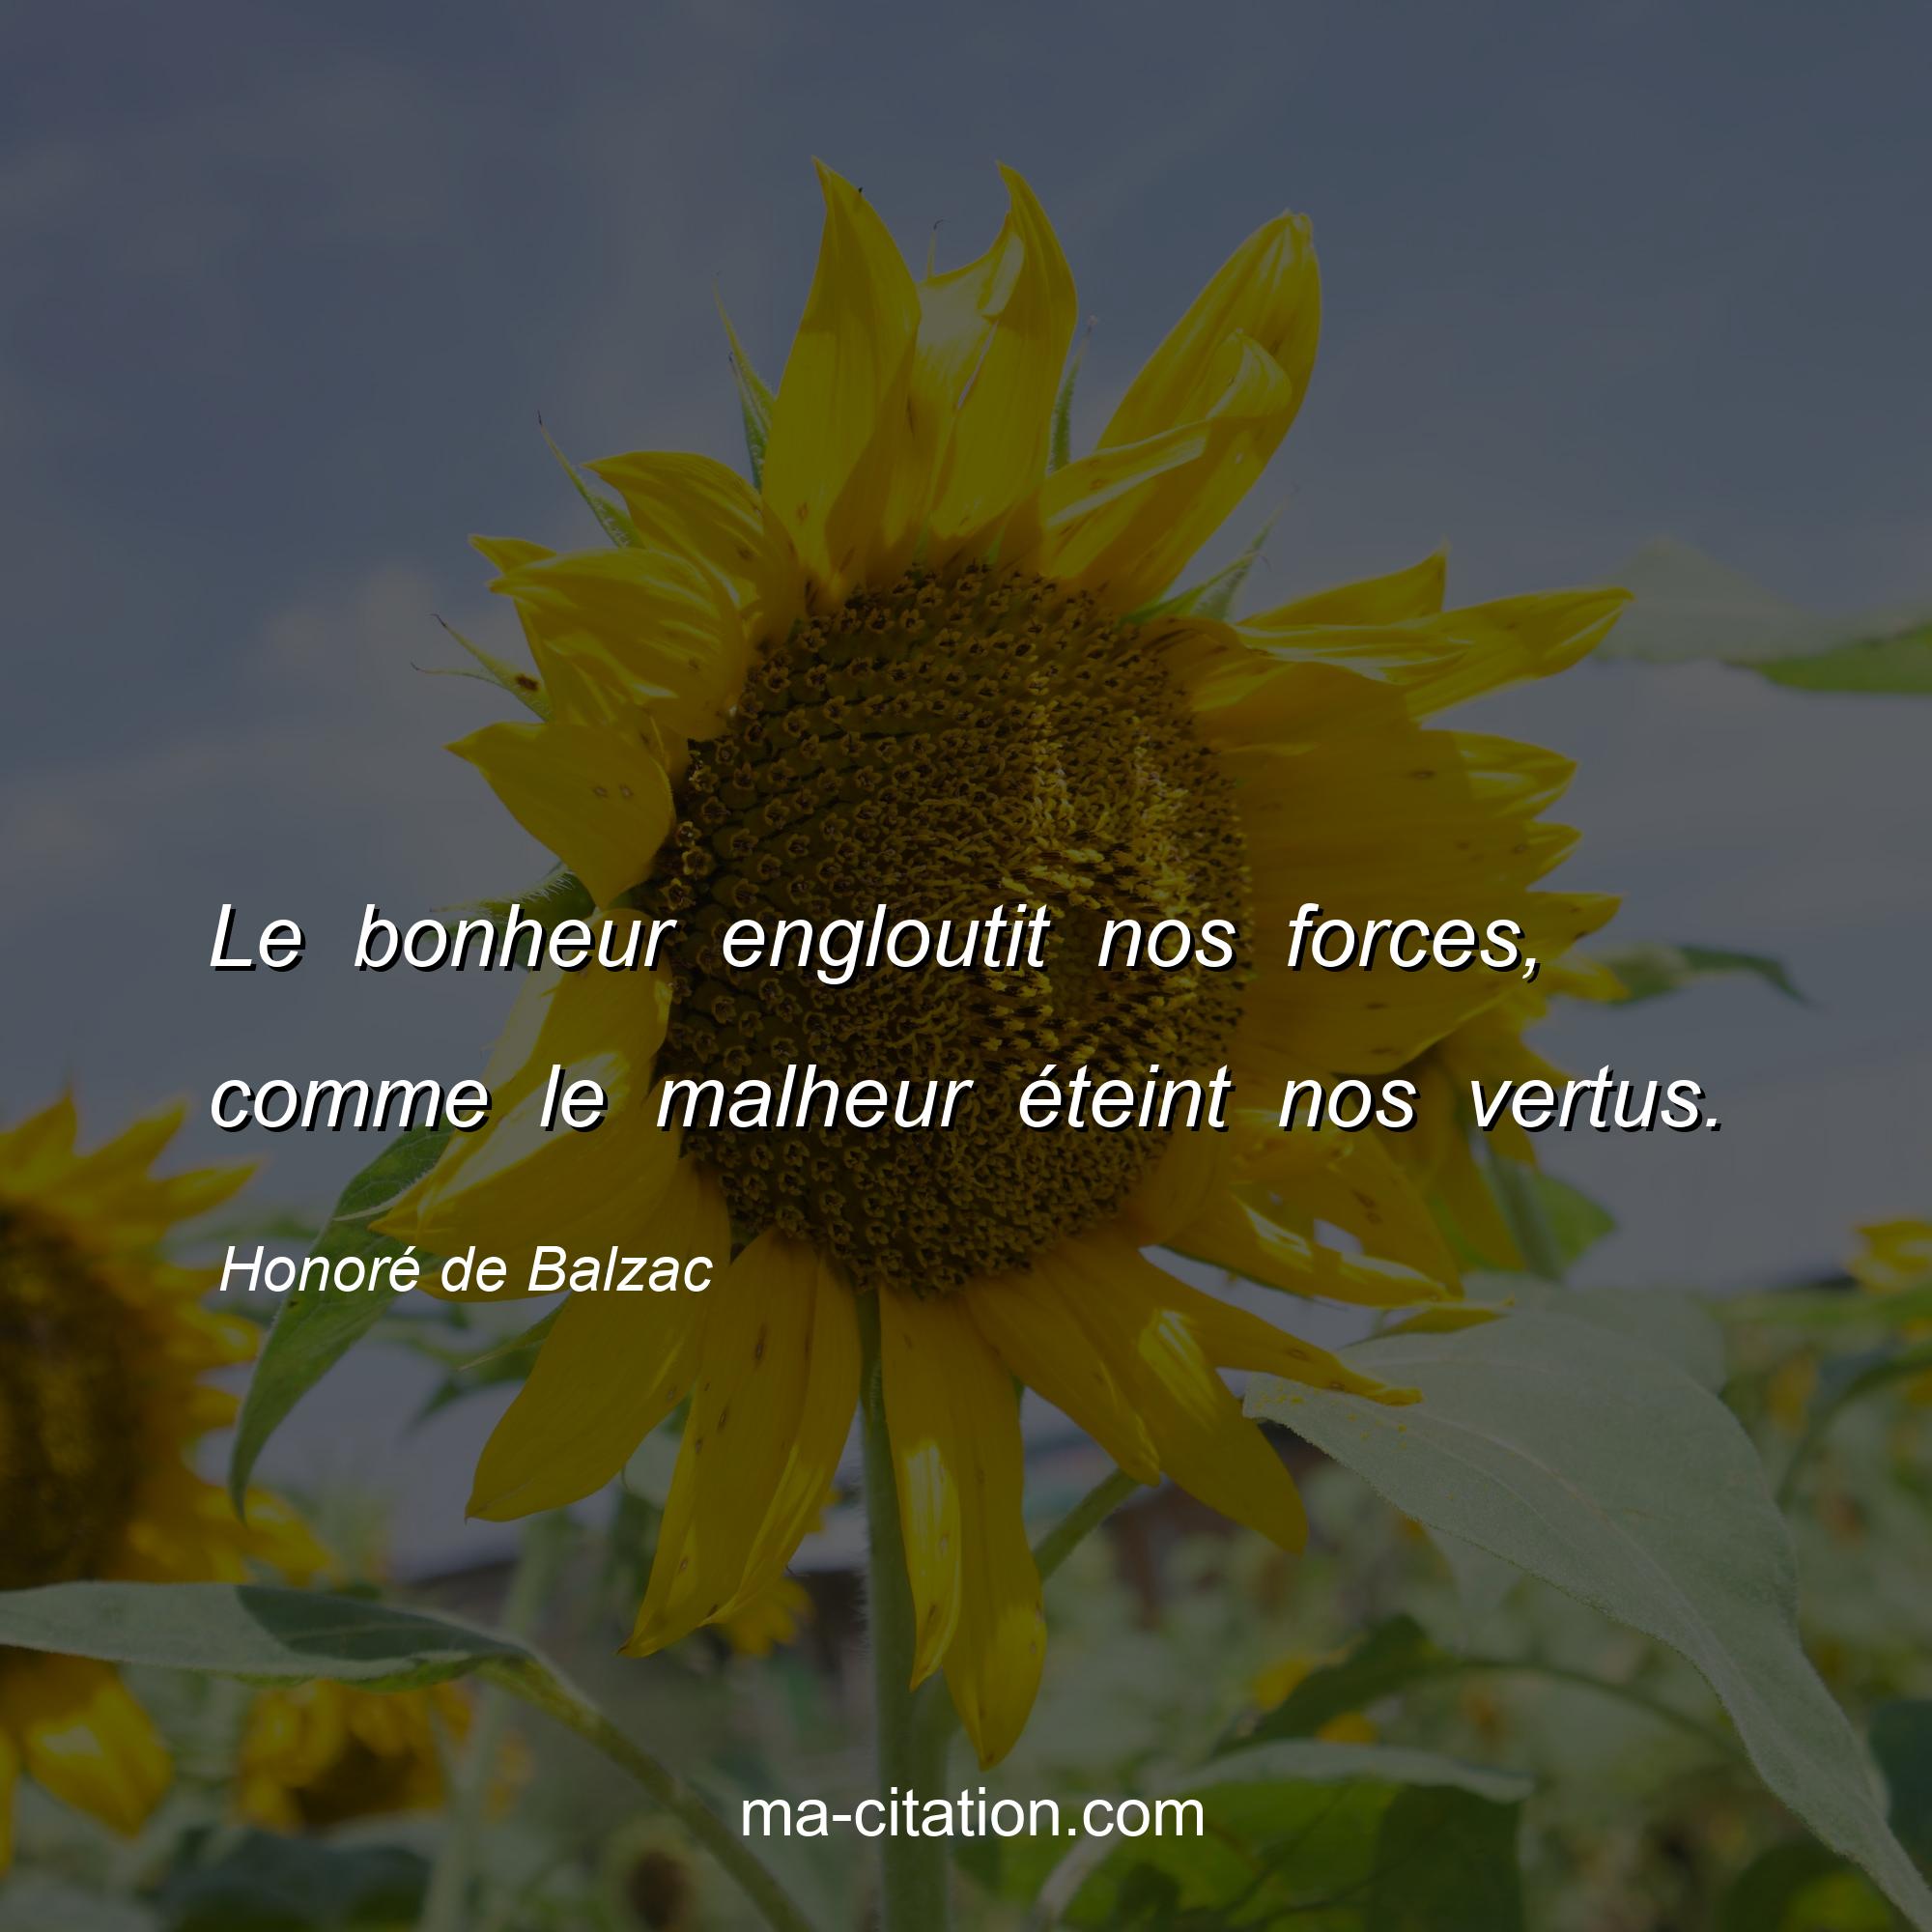 Honoré de Balzac : Le bonheur engloutit nos forces, comme le malheur éteint nos vertus.